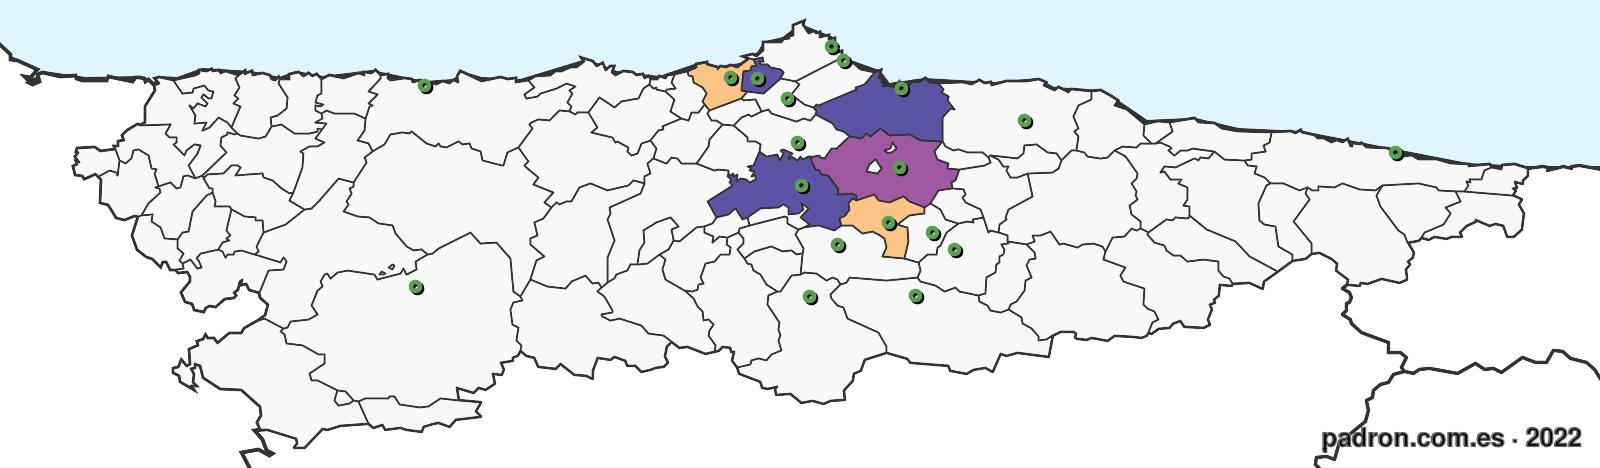 caboverdianos en asturias.